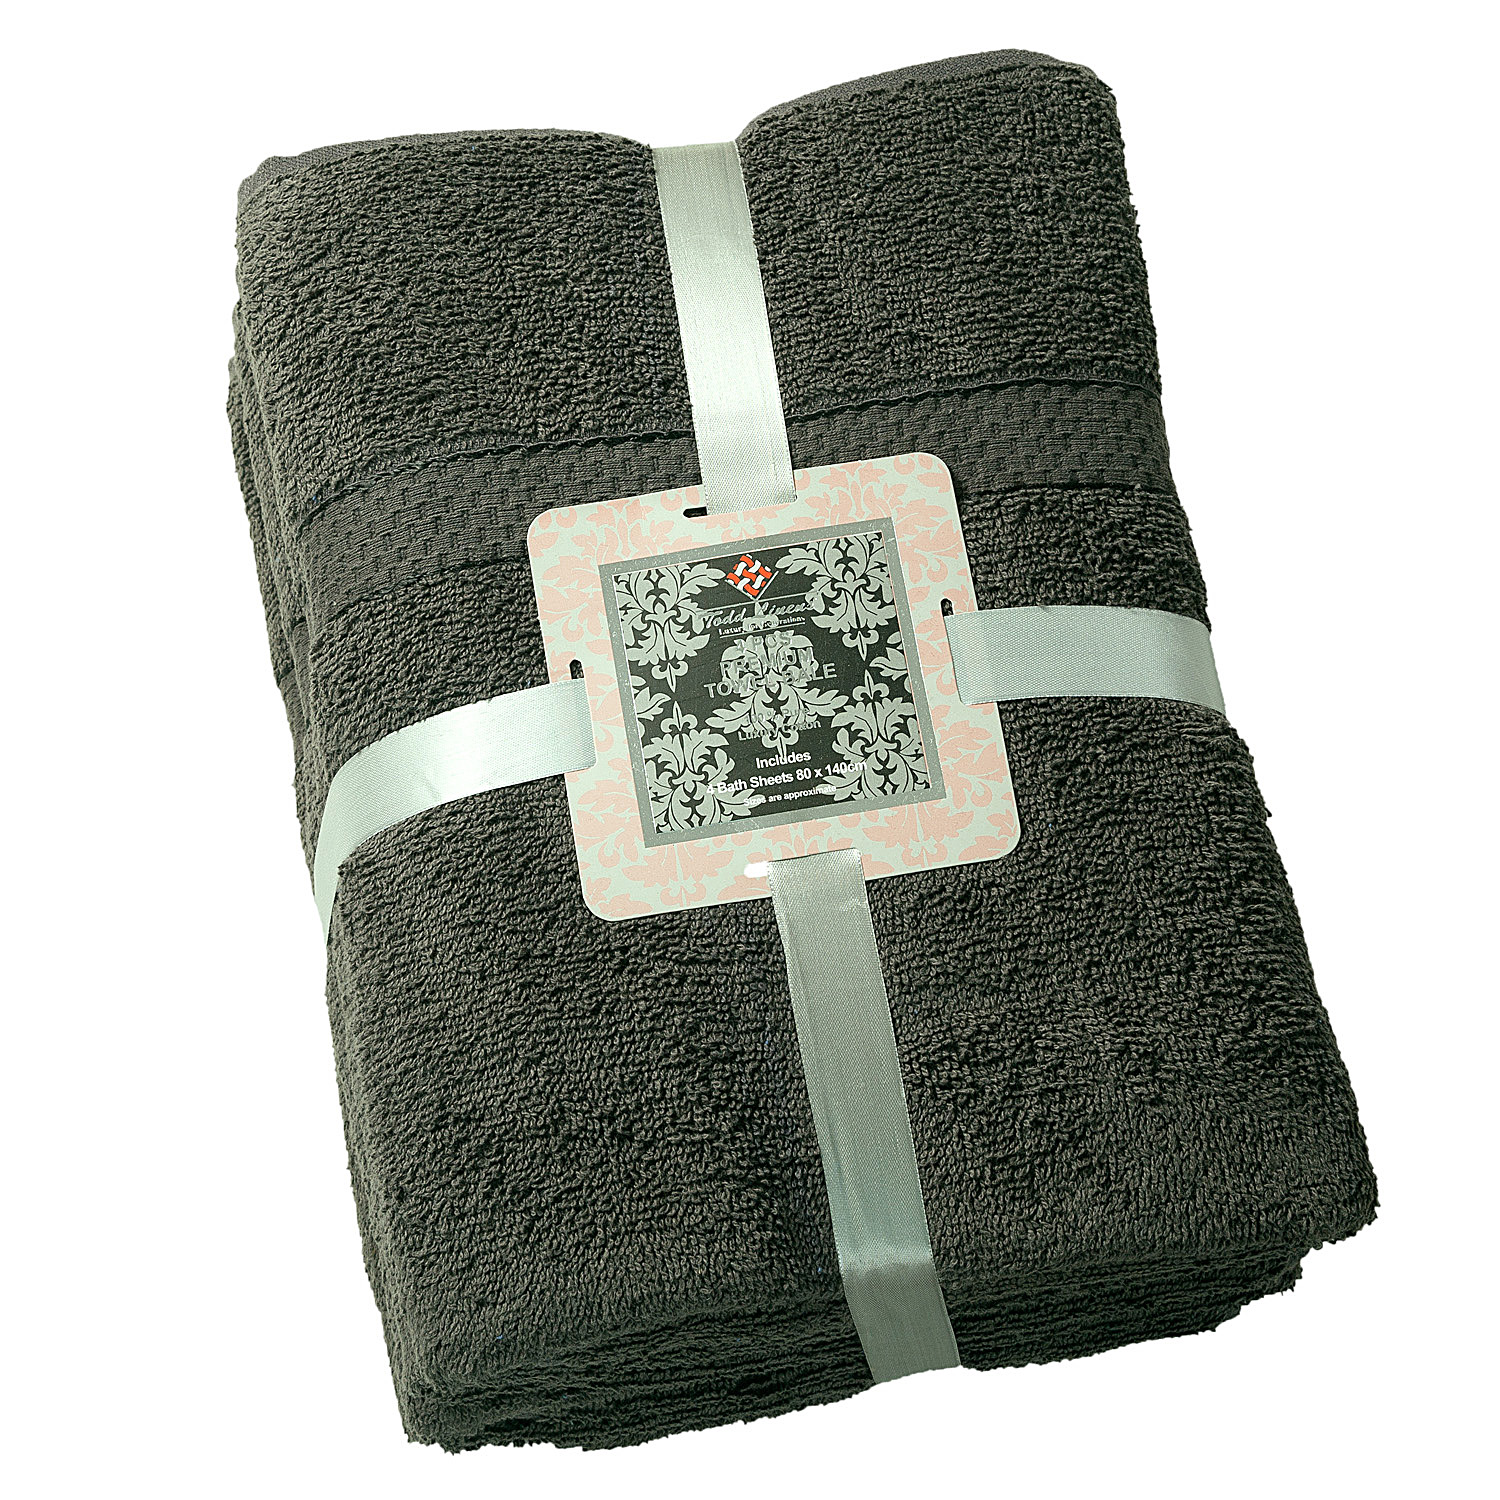 Towel 4 Pcs Dark Grey Premium Bale Set Plain Bath Sheet